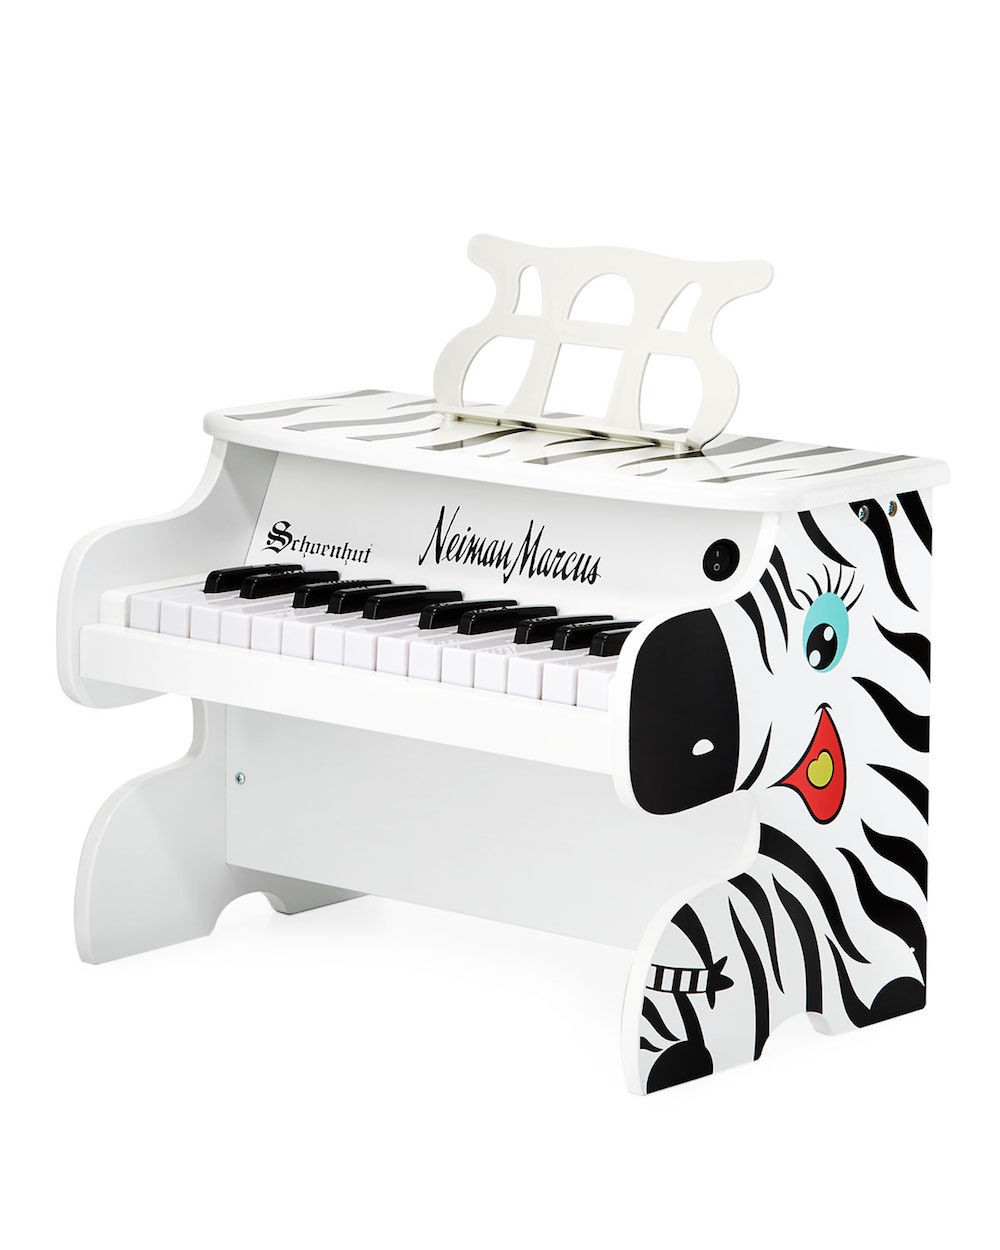 Schoenhut Zebra Digital Piano